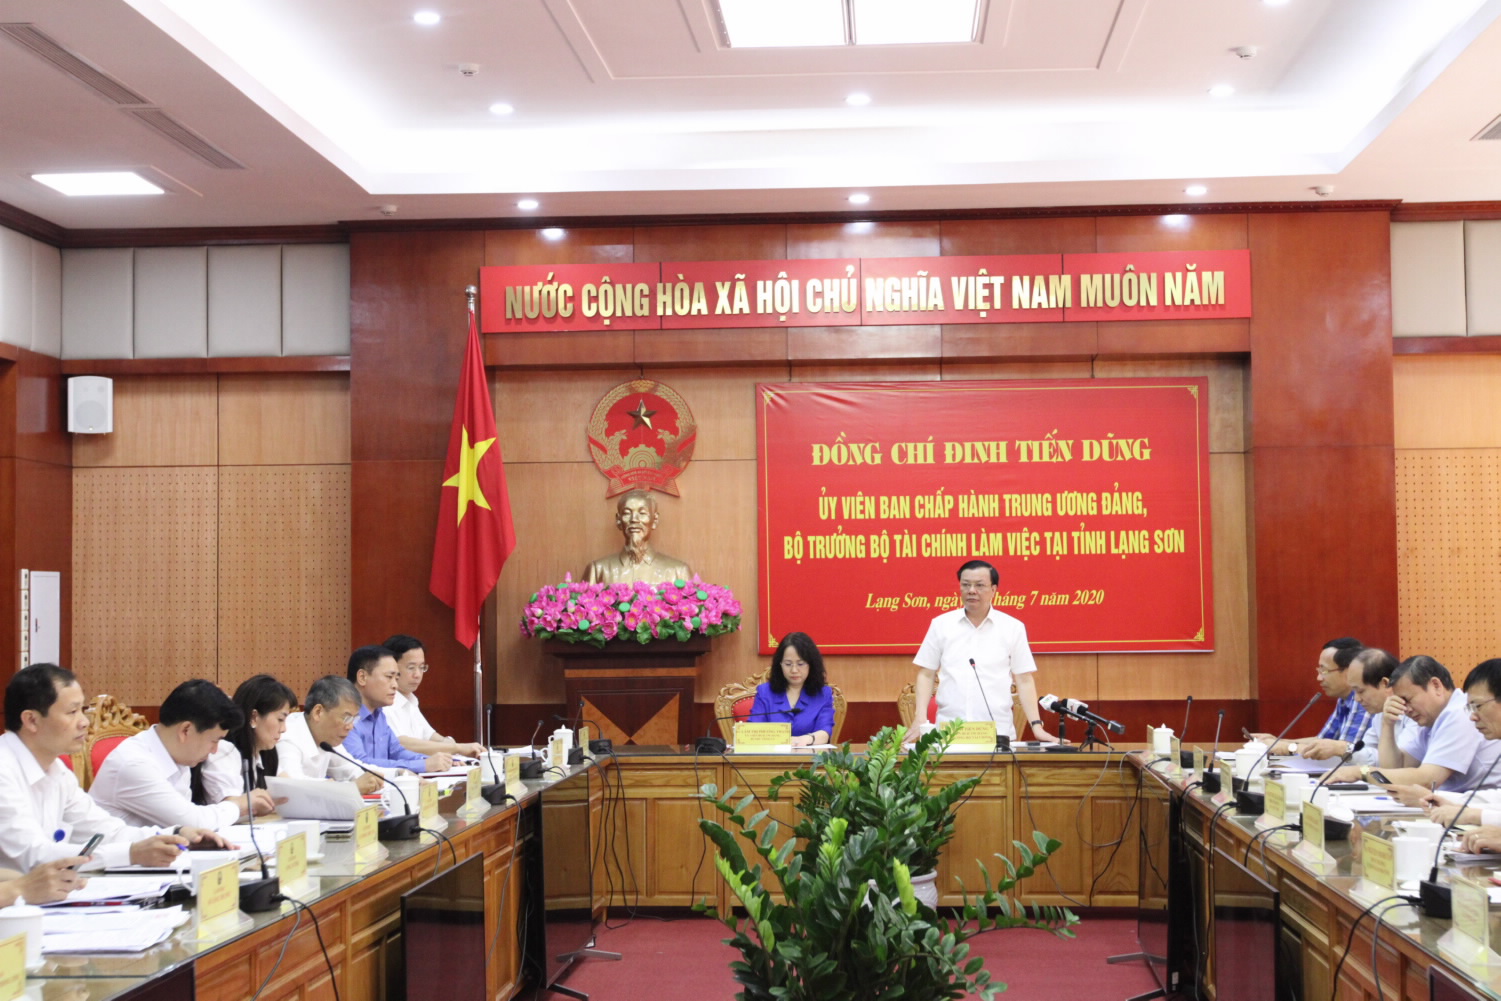 Bộ trưởng Bộ Tài chính Đinh Tiến Dũng kiểm tra công tác giải ngân vốn đầu tư công tại tỉnh Lạng Sơn